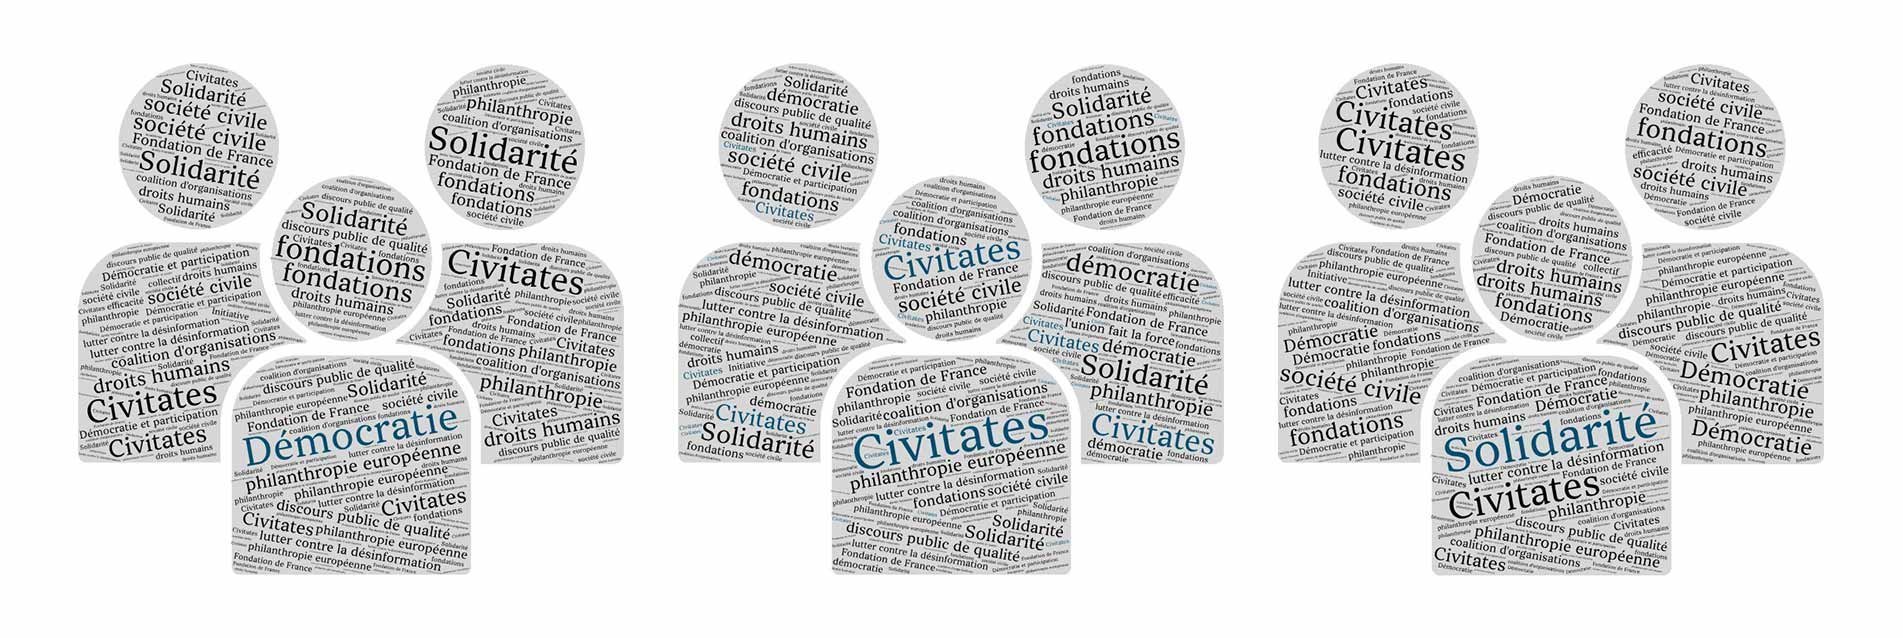 Civitates : la philanthropie européenne au service des droits humains